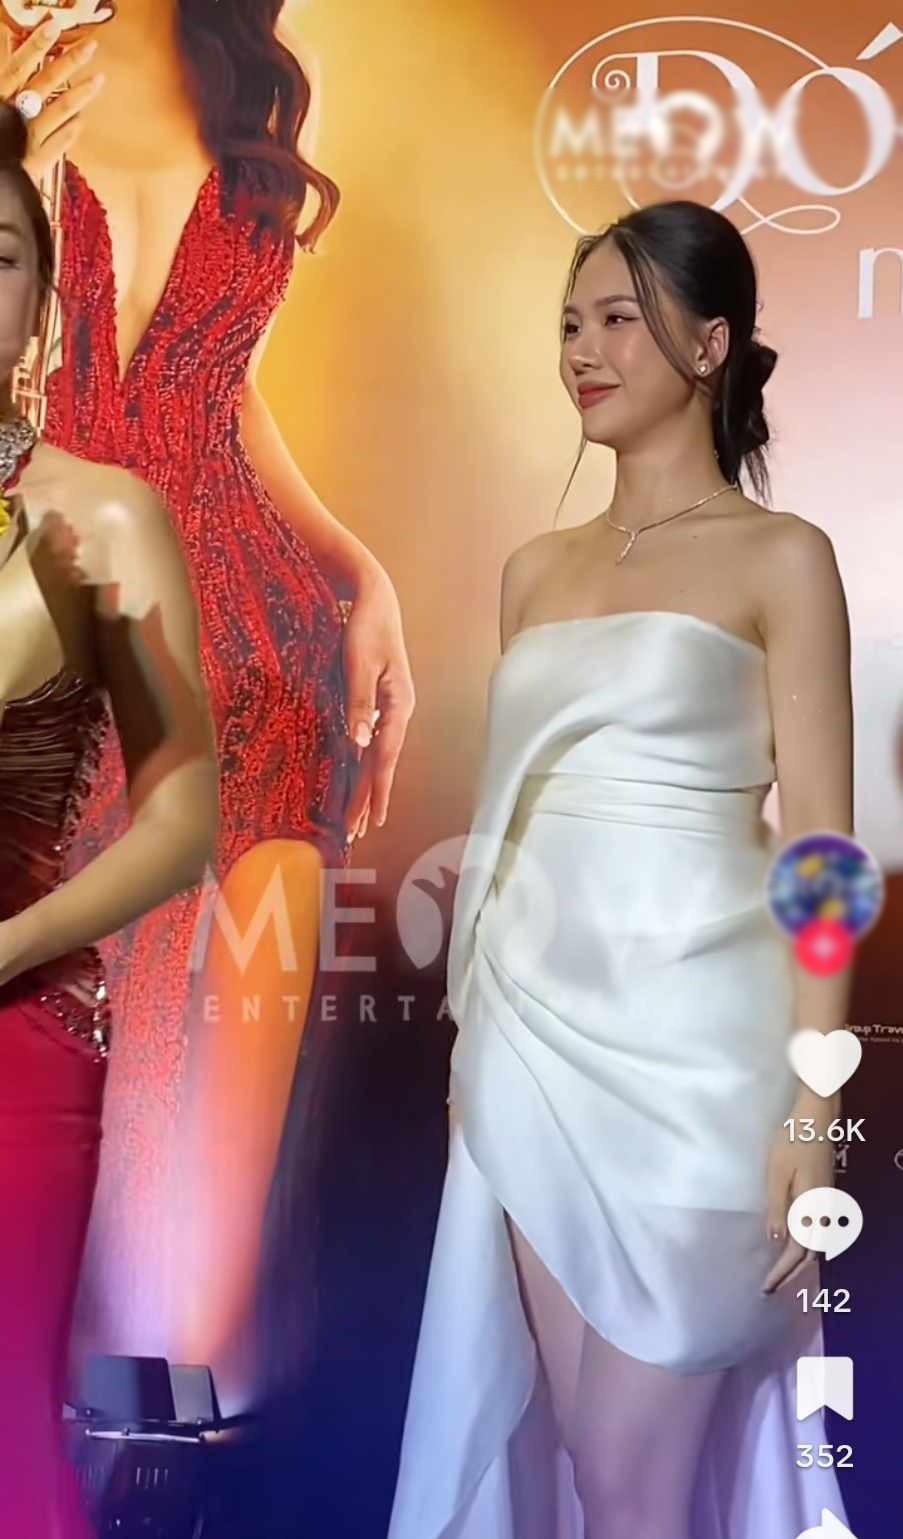 Bị đàn chị "lơ đẹp" tại thảm đỏ, Miss Universe Việt Nam đương nhiệm nói gì? - 2